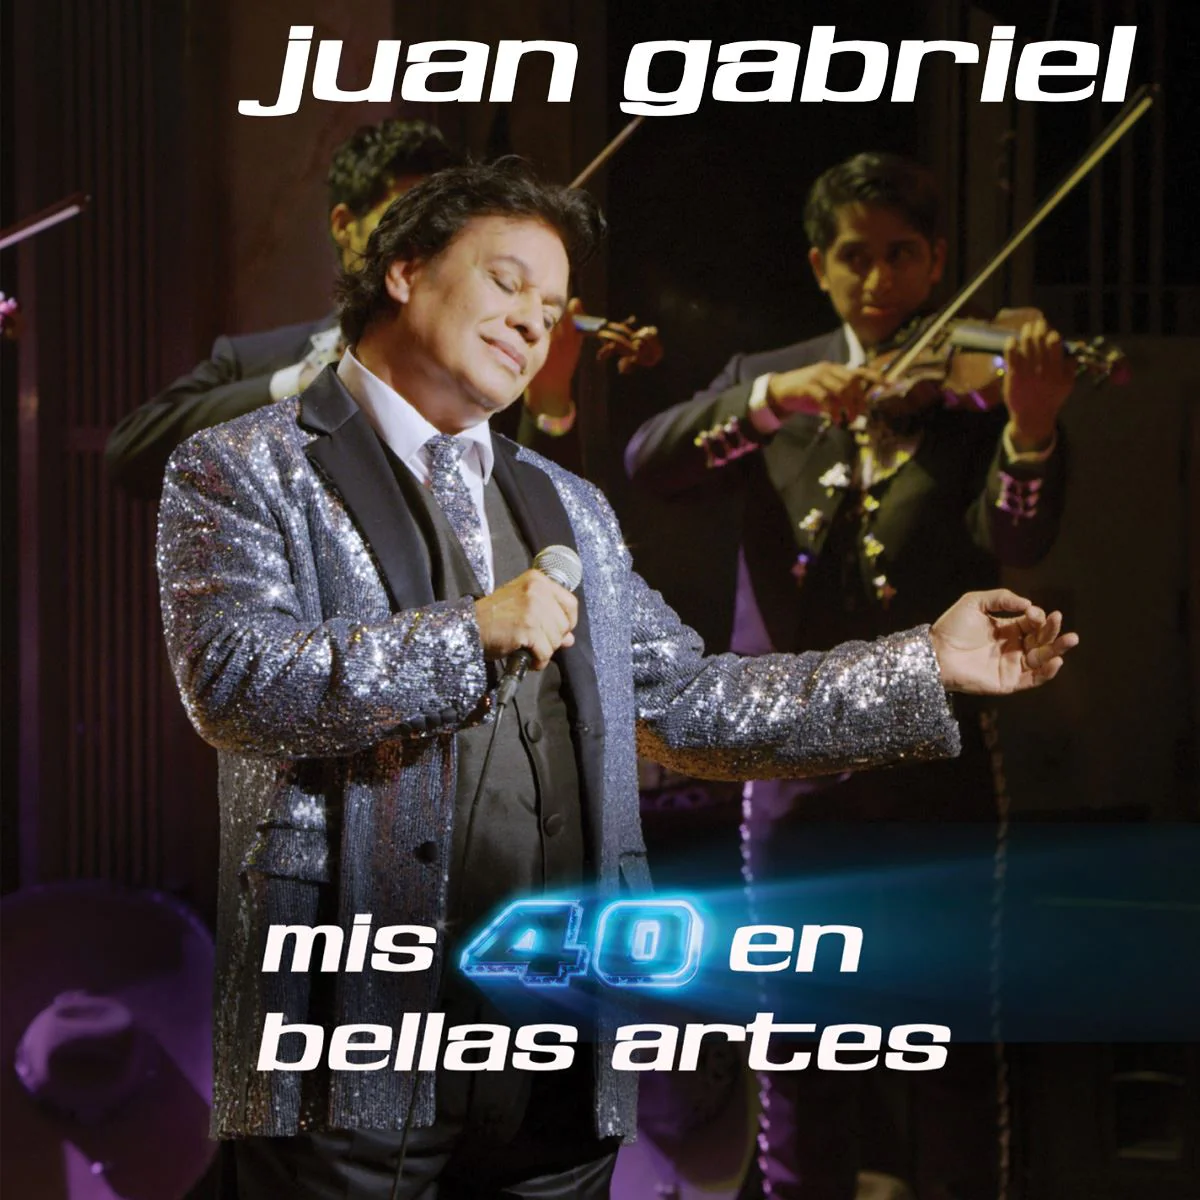 Juan Gabriel / Mis 40 en Bellas Artes I